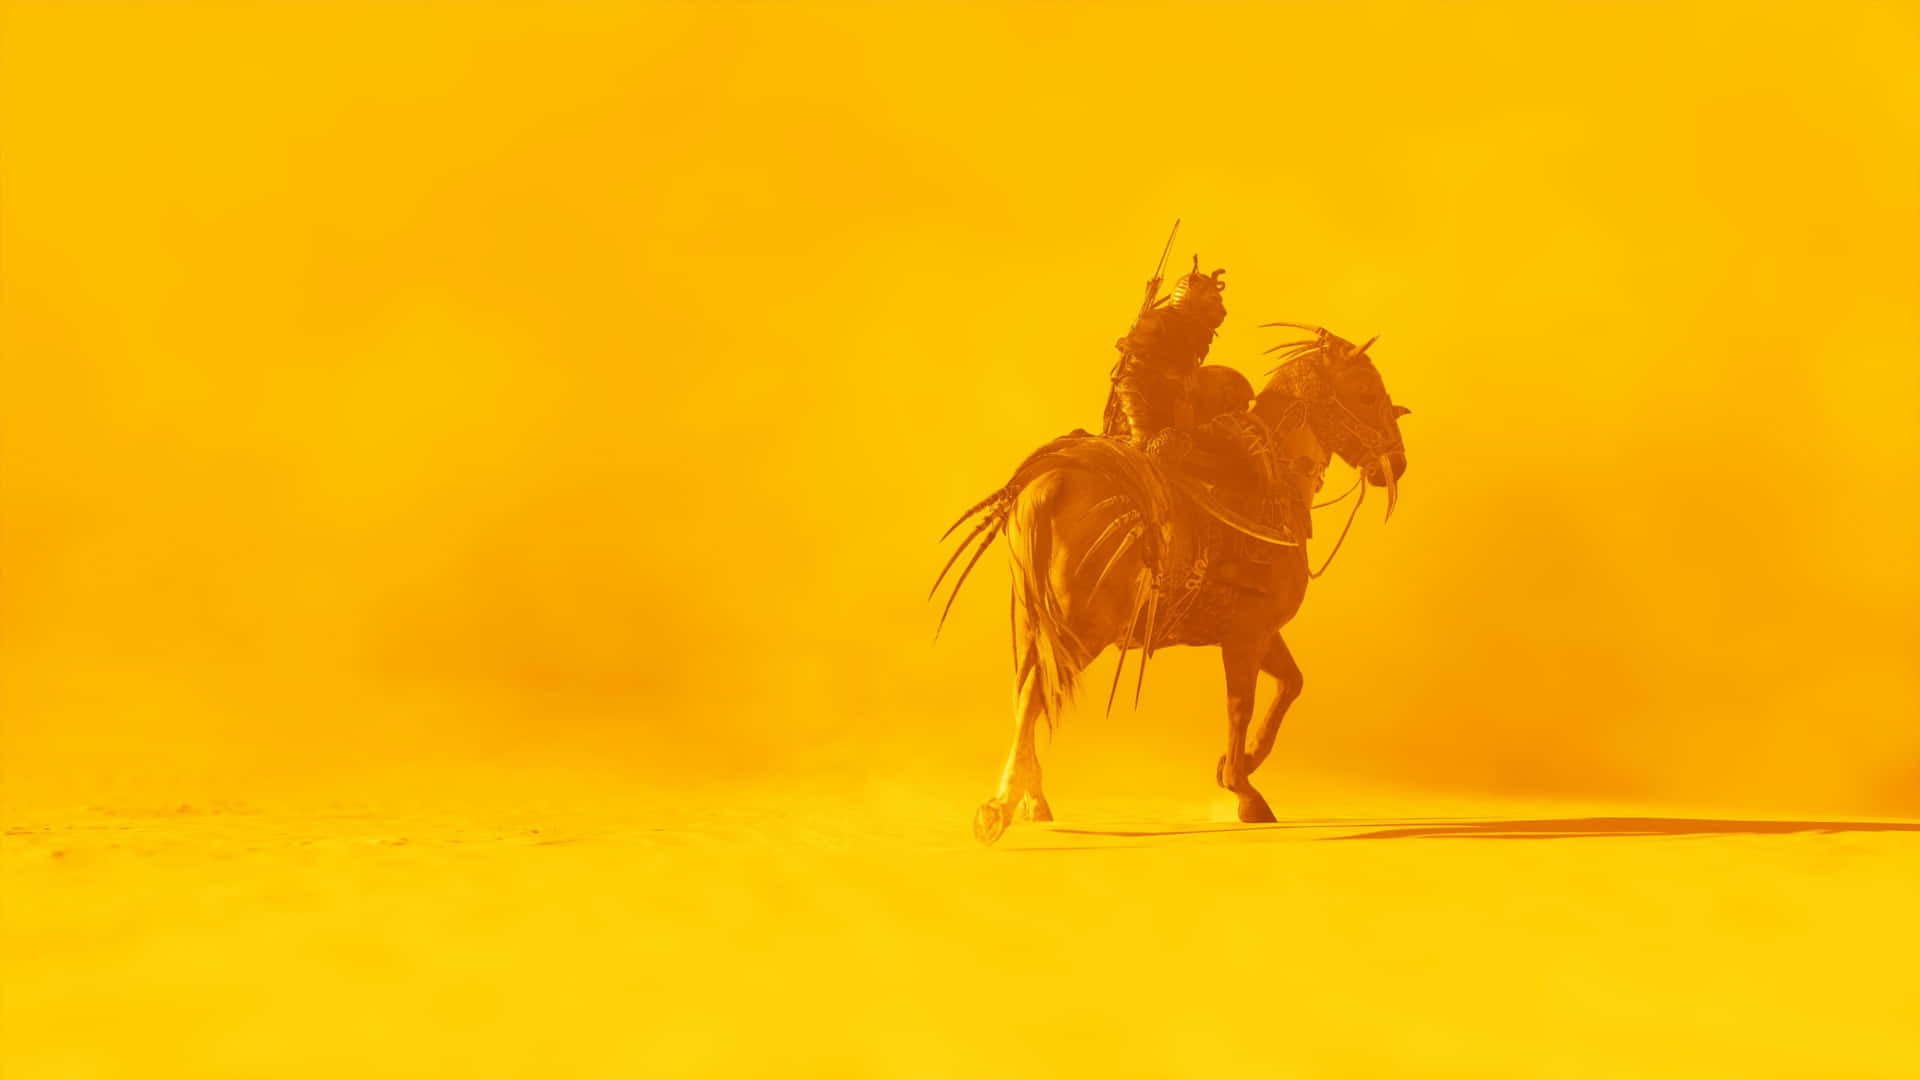 Desert Warrioron Horseback Wallpaper